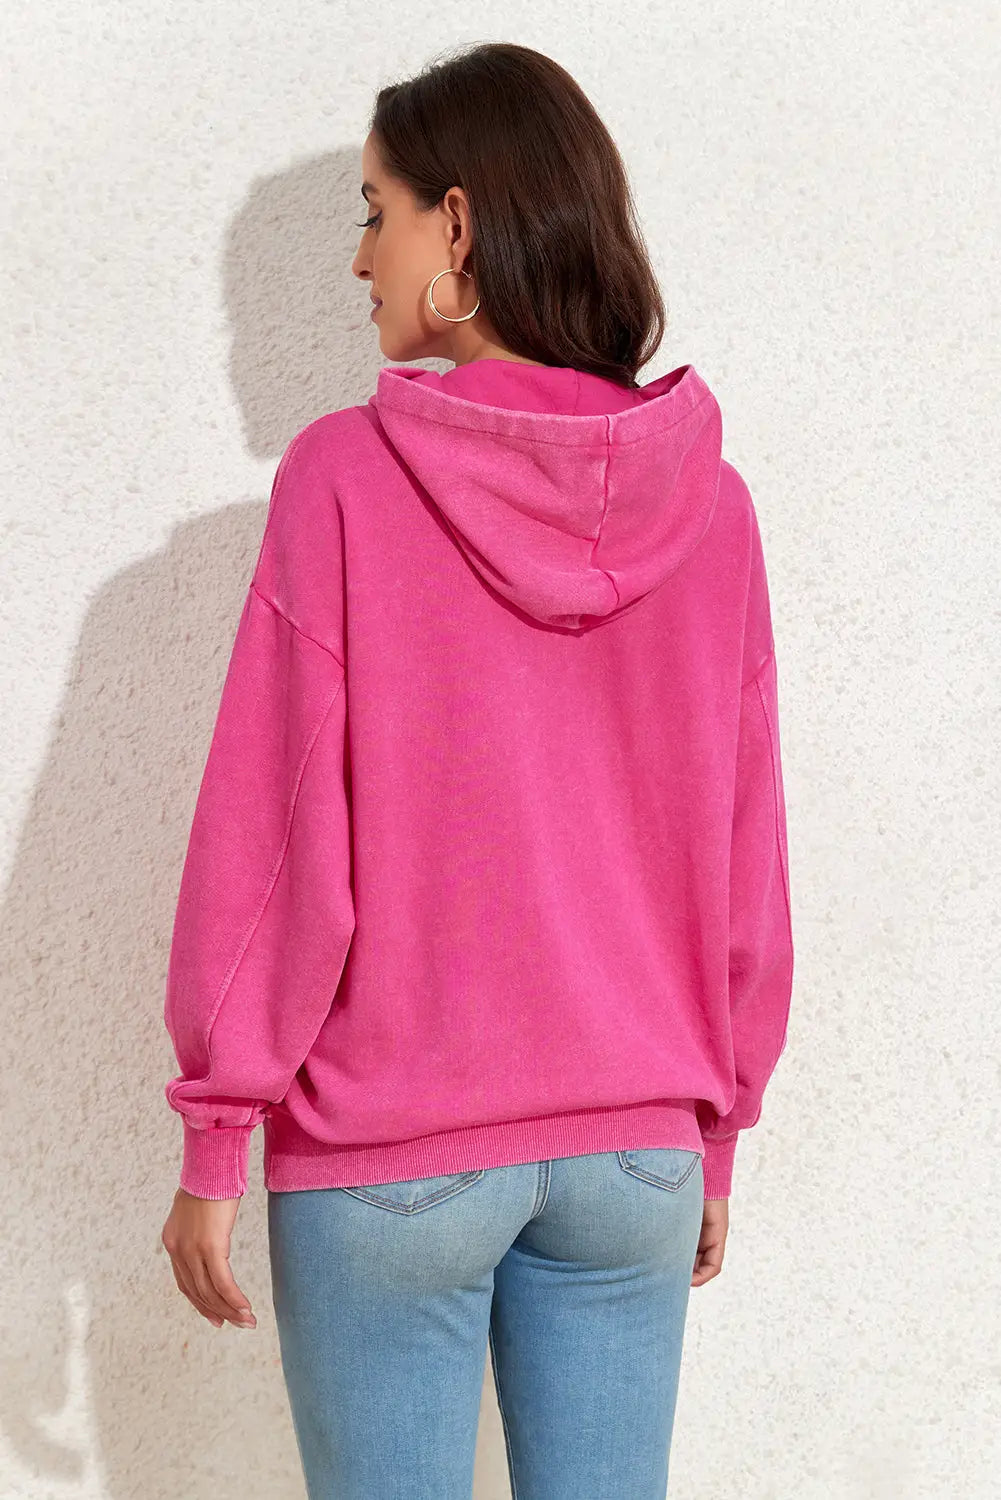 Bright pink vintage wash kangaroo pocket hoodie - sweatshirts & hoodies